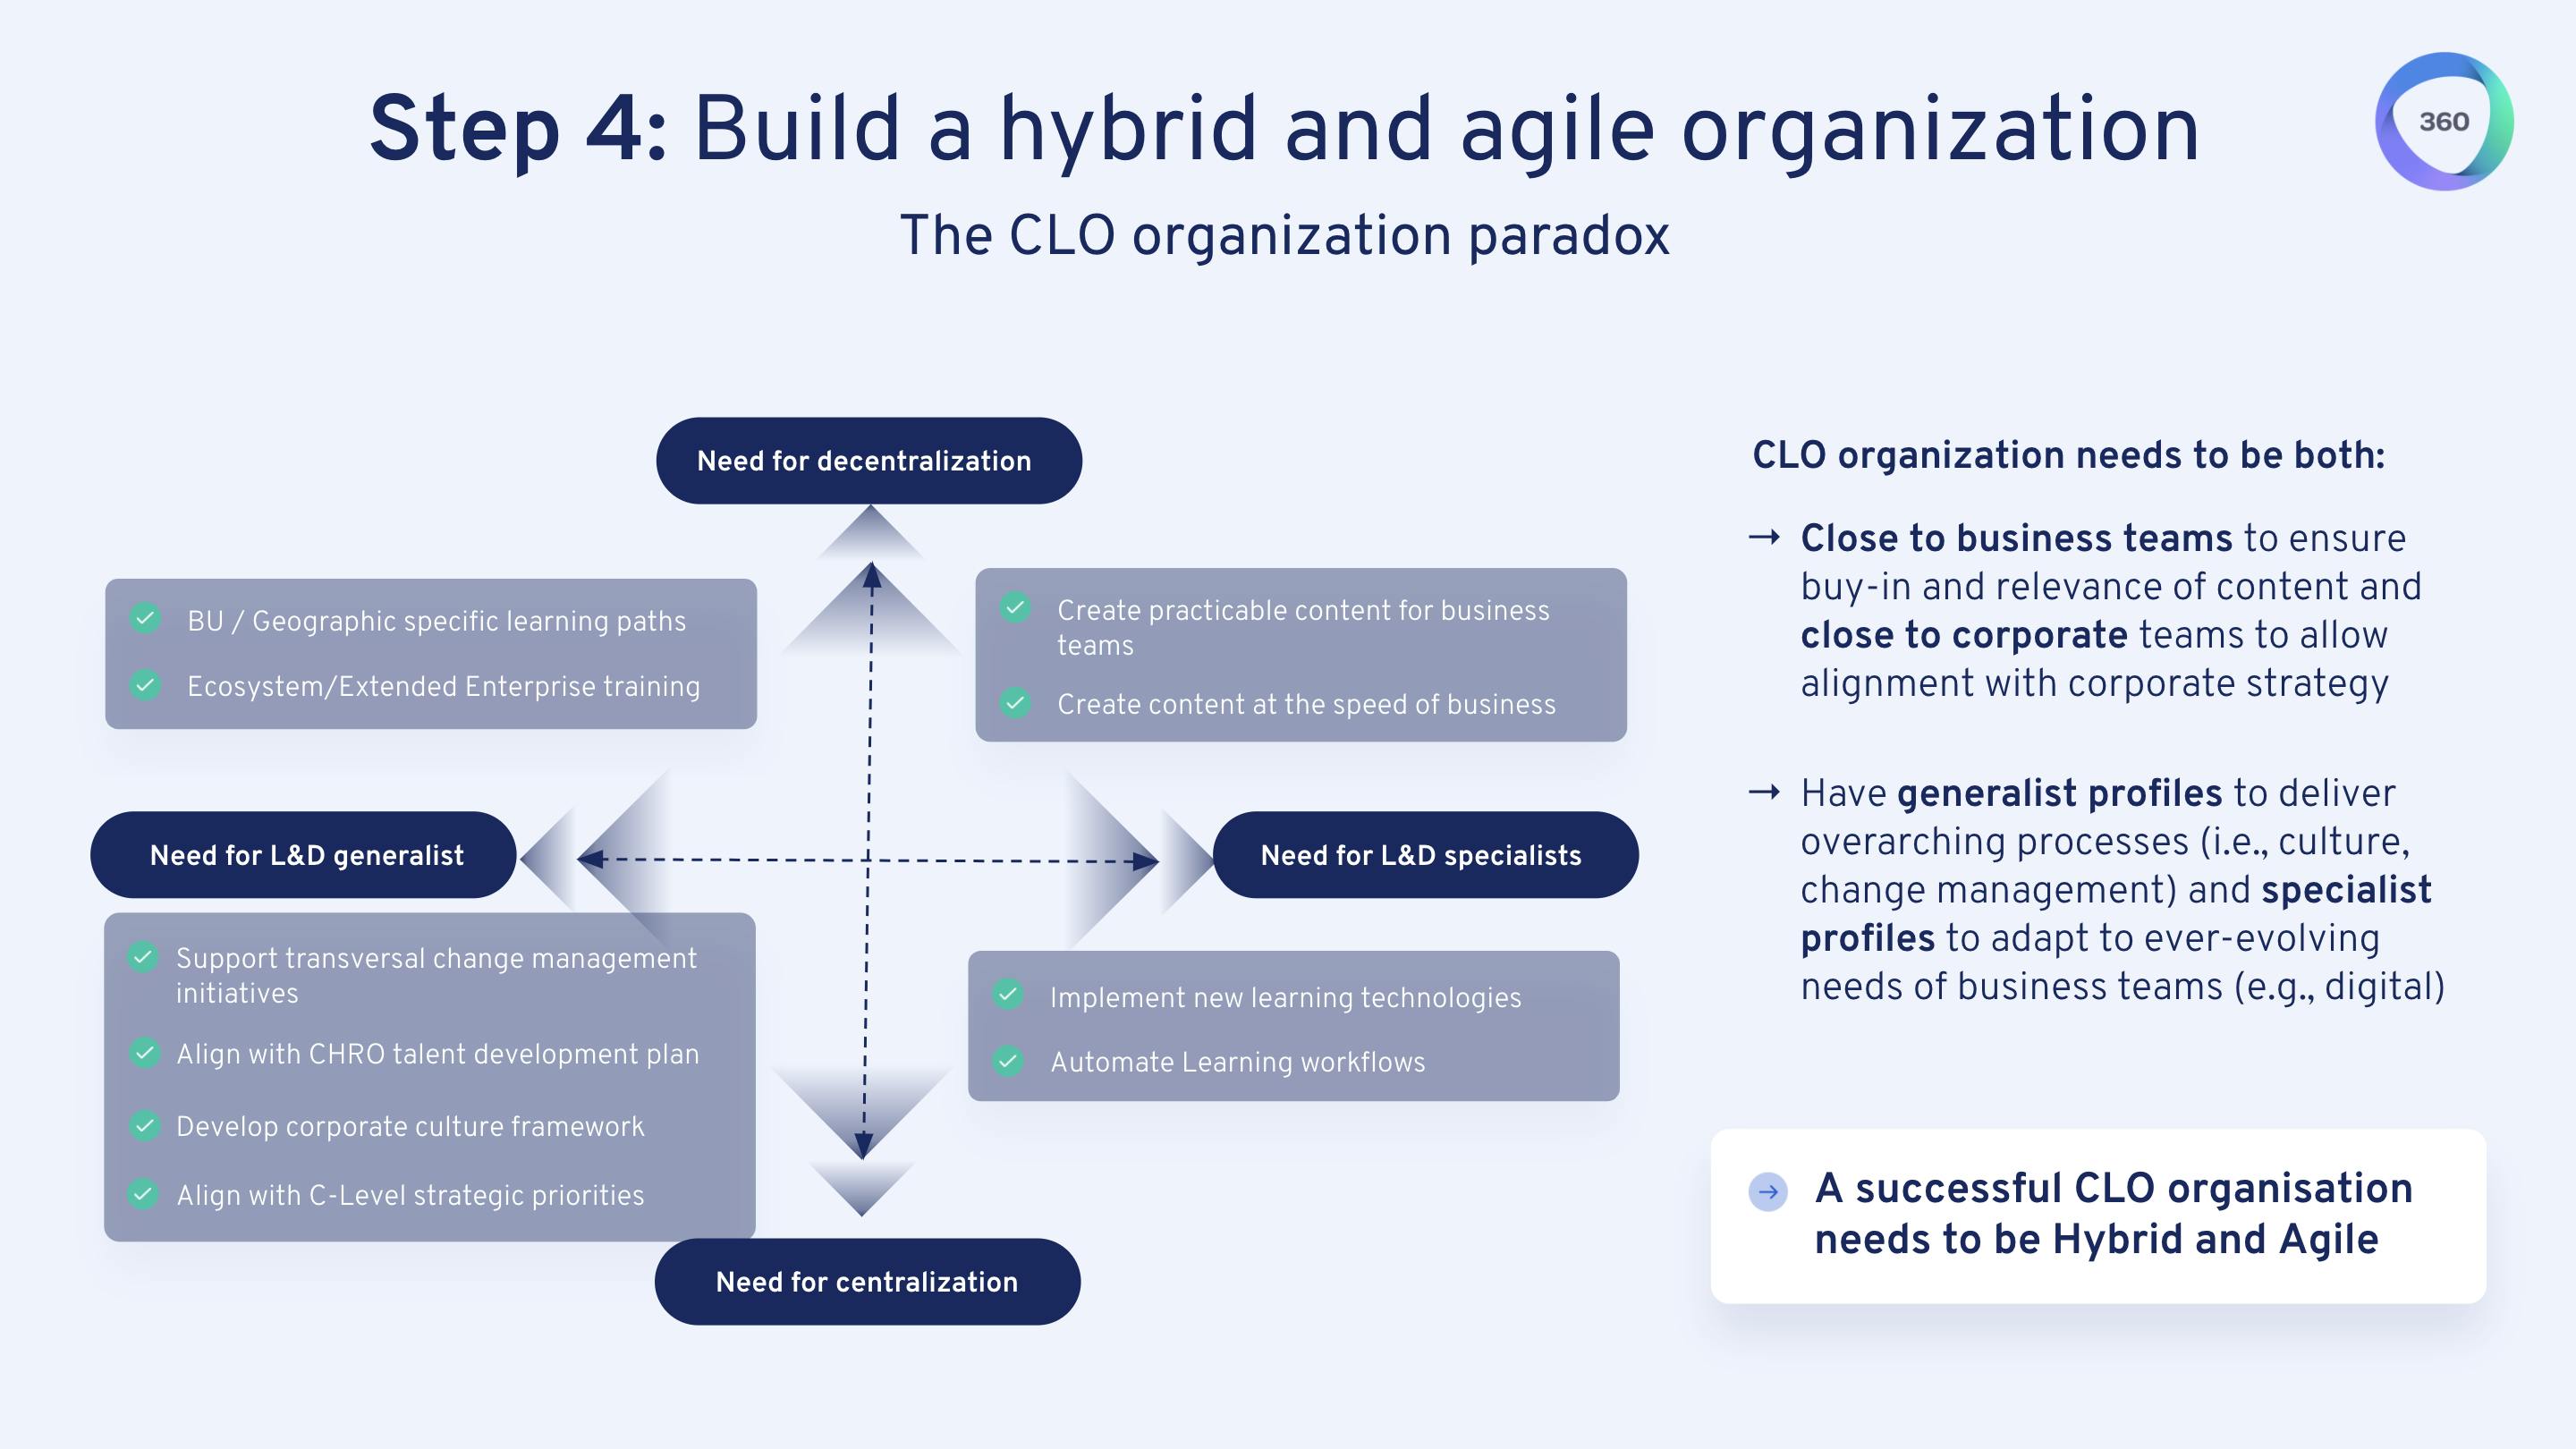 Step 4: build a hybrid and agile organization